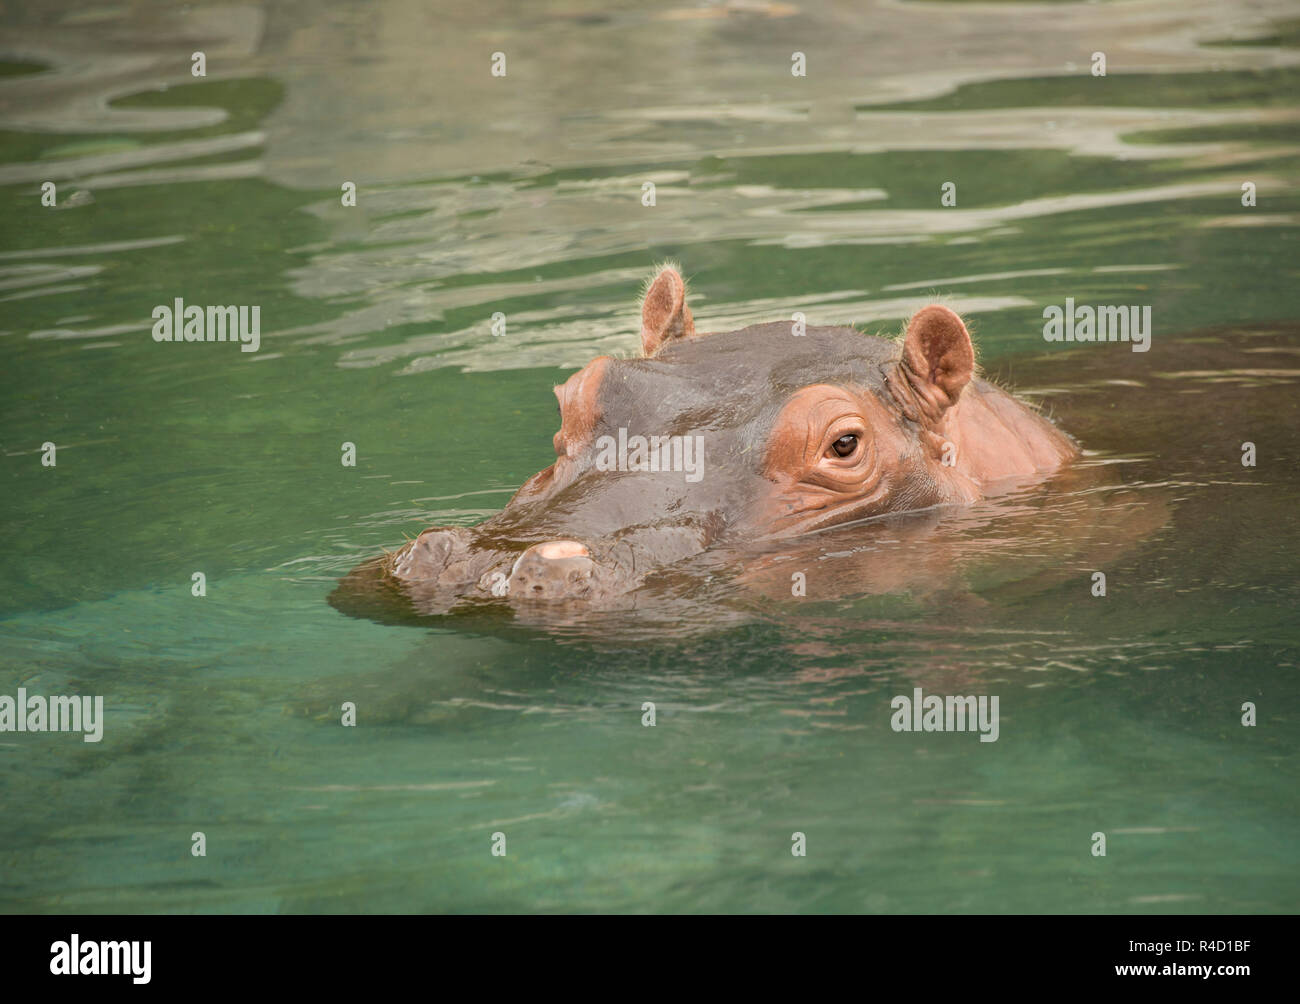 Flusspferd oder Nilpferd schwimmen in Green River ist eine große  afrikanische Aquatische wildes Tier, die sehr gefährlich ist  Stockfotografie - Alamy